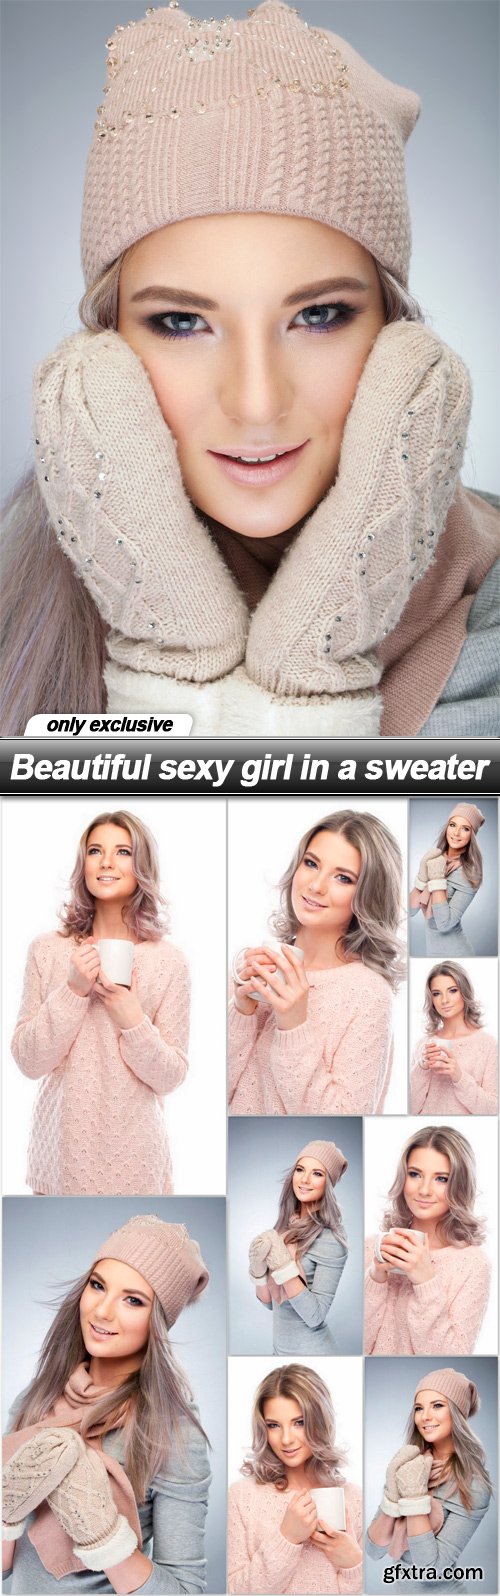 Beautiful sexy girl in a sweater - 10 UHQ JPEG